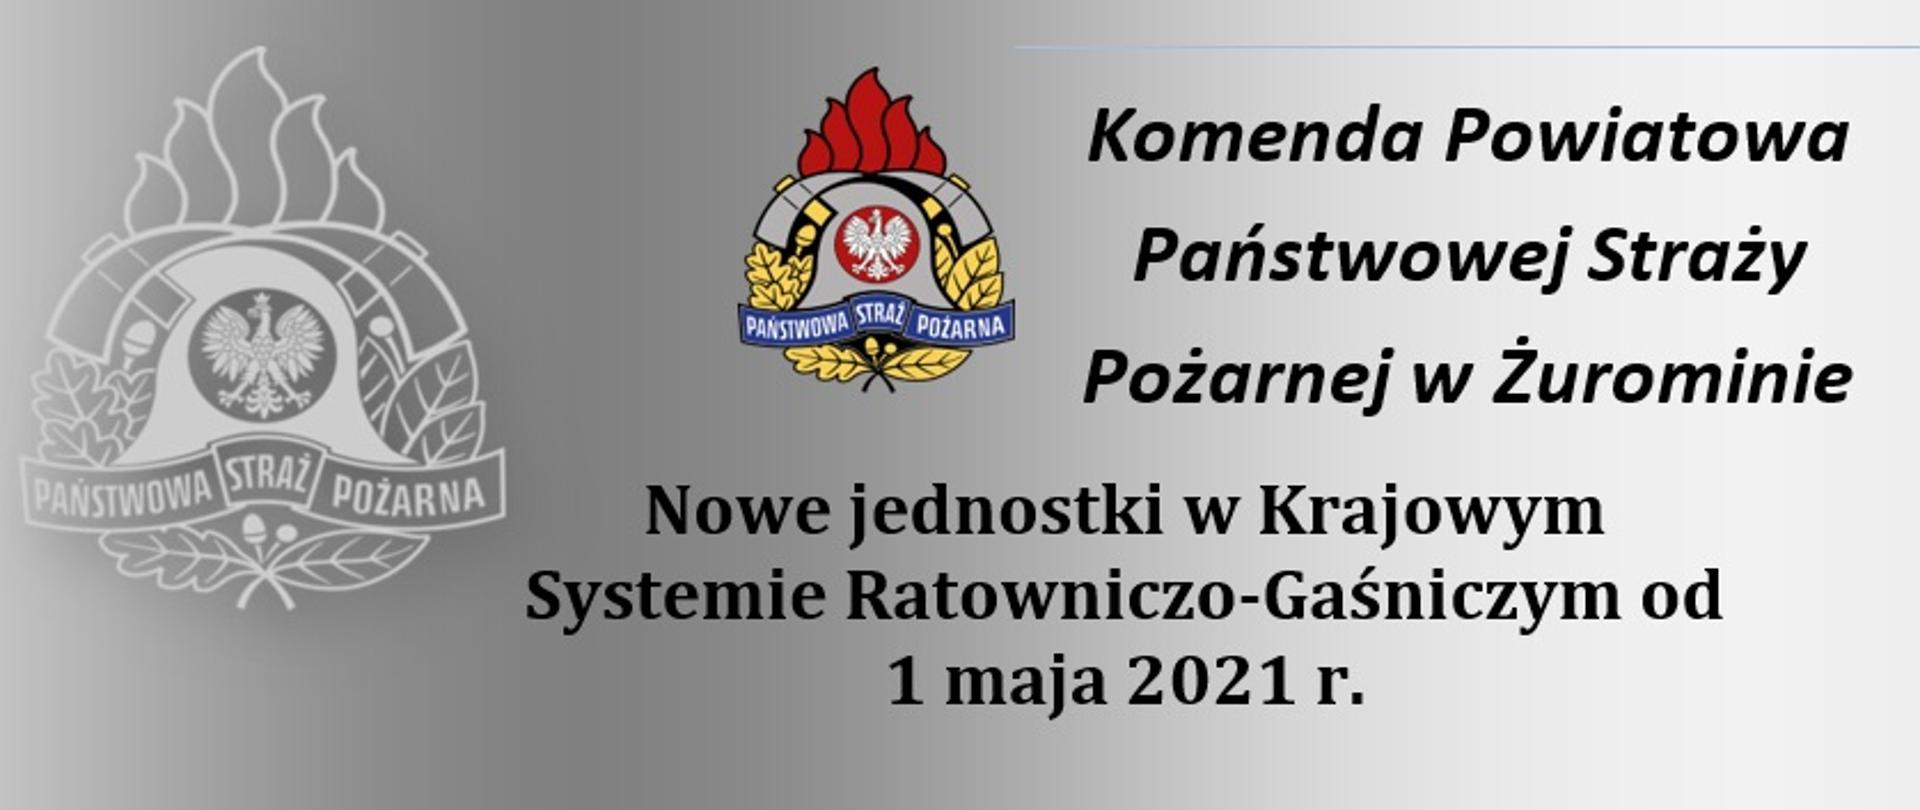 Czarne napisy: Nowe jednostki w Krajowym Systemie Ratowniczo-Gaśniczym od 1 maja 2021 r. oraz Komenda Powiatowa Państwowej Straży Pożarnej w Żurominie.